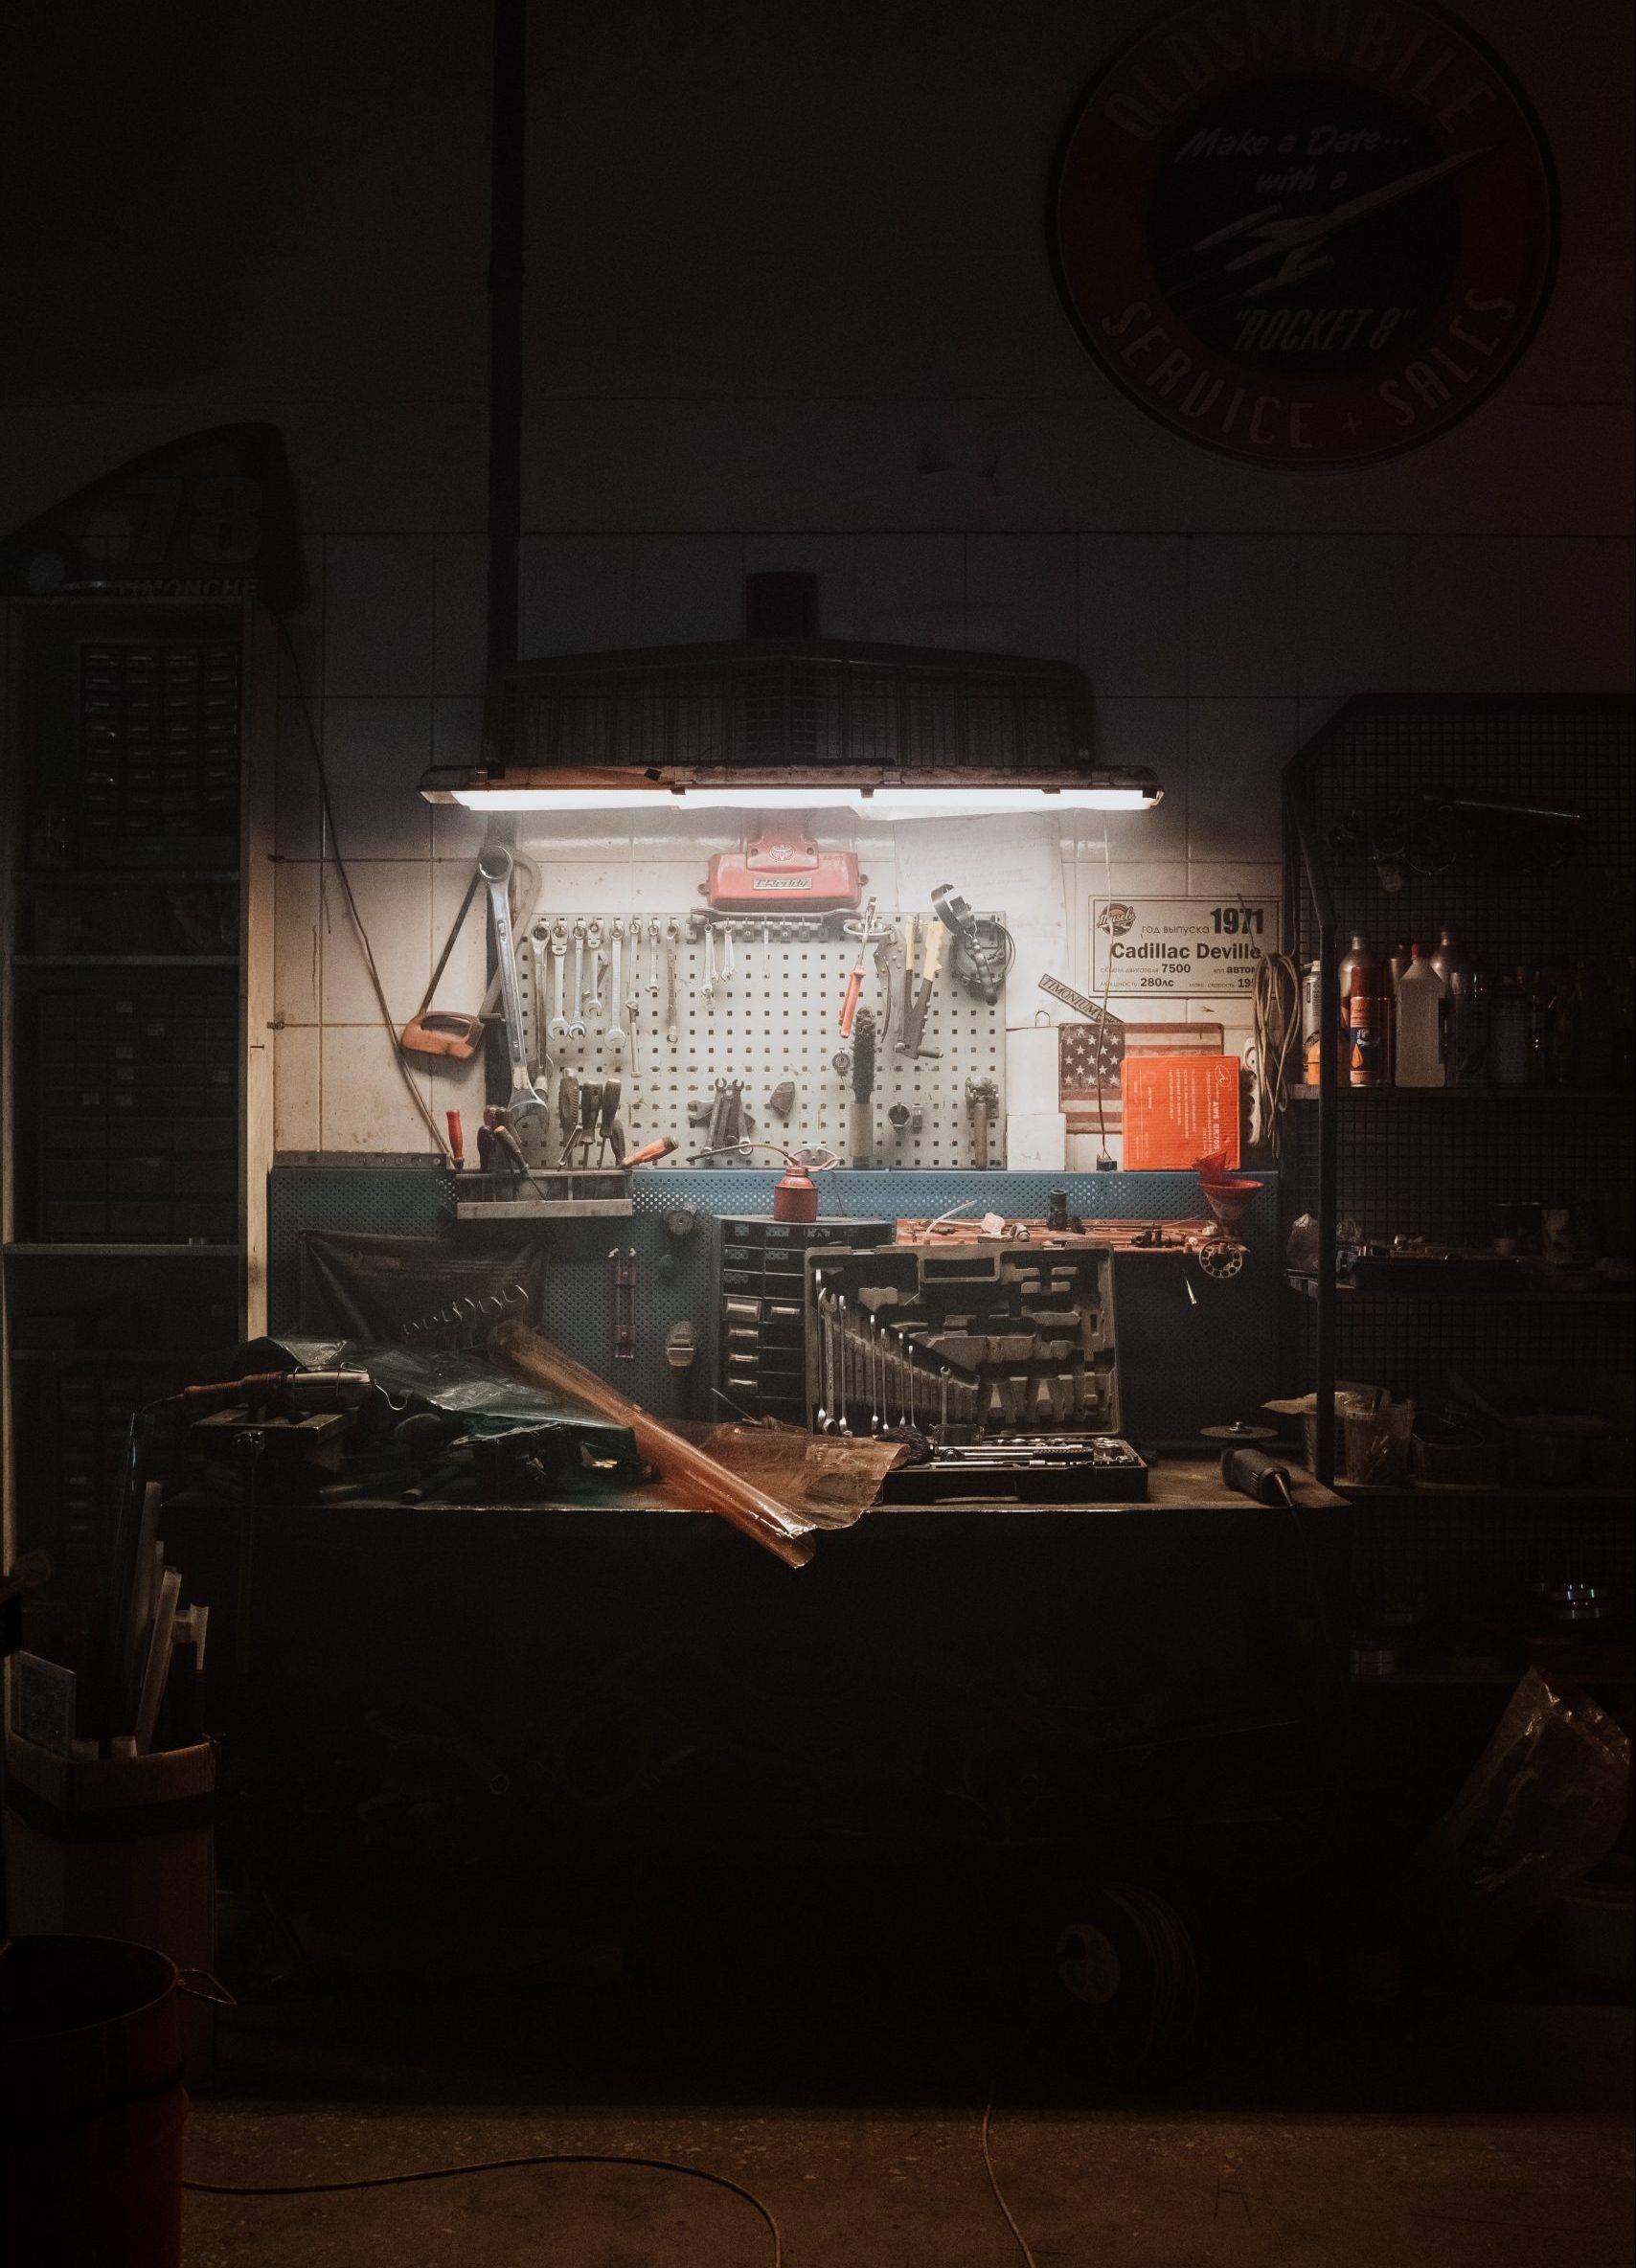 Eine beleuchtete Werkbank in einer dunklen Halle - das Zuhause eines zufriedenen Handwerkers